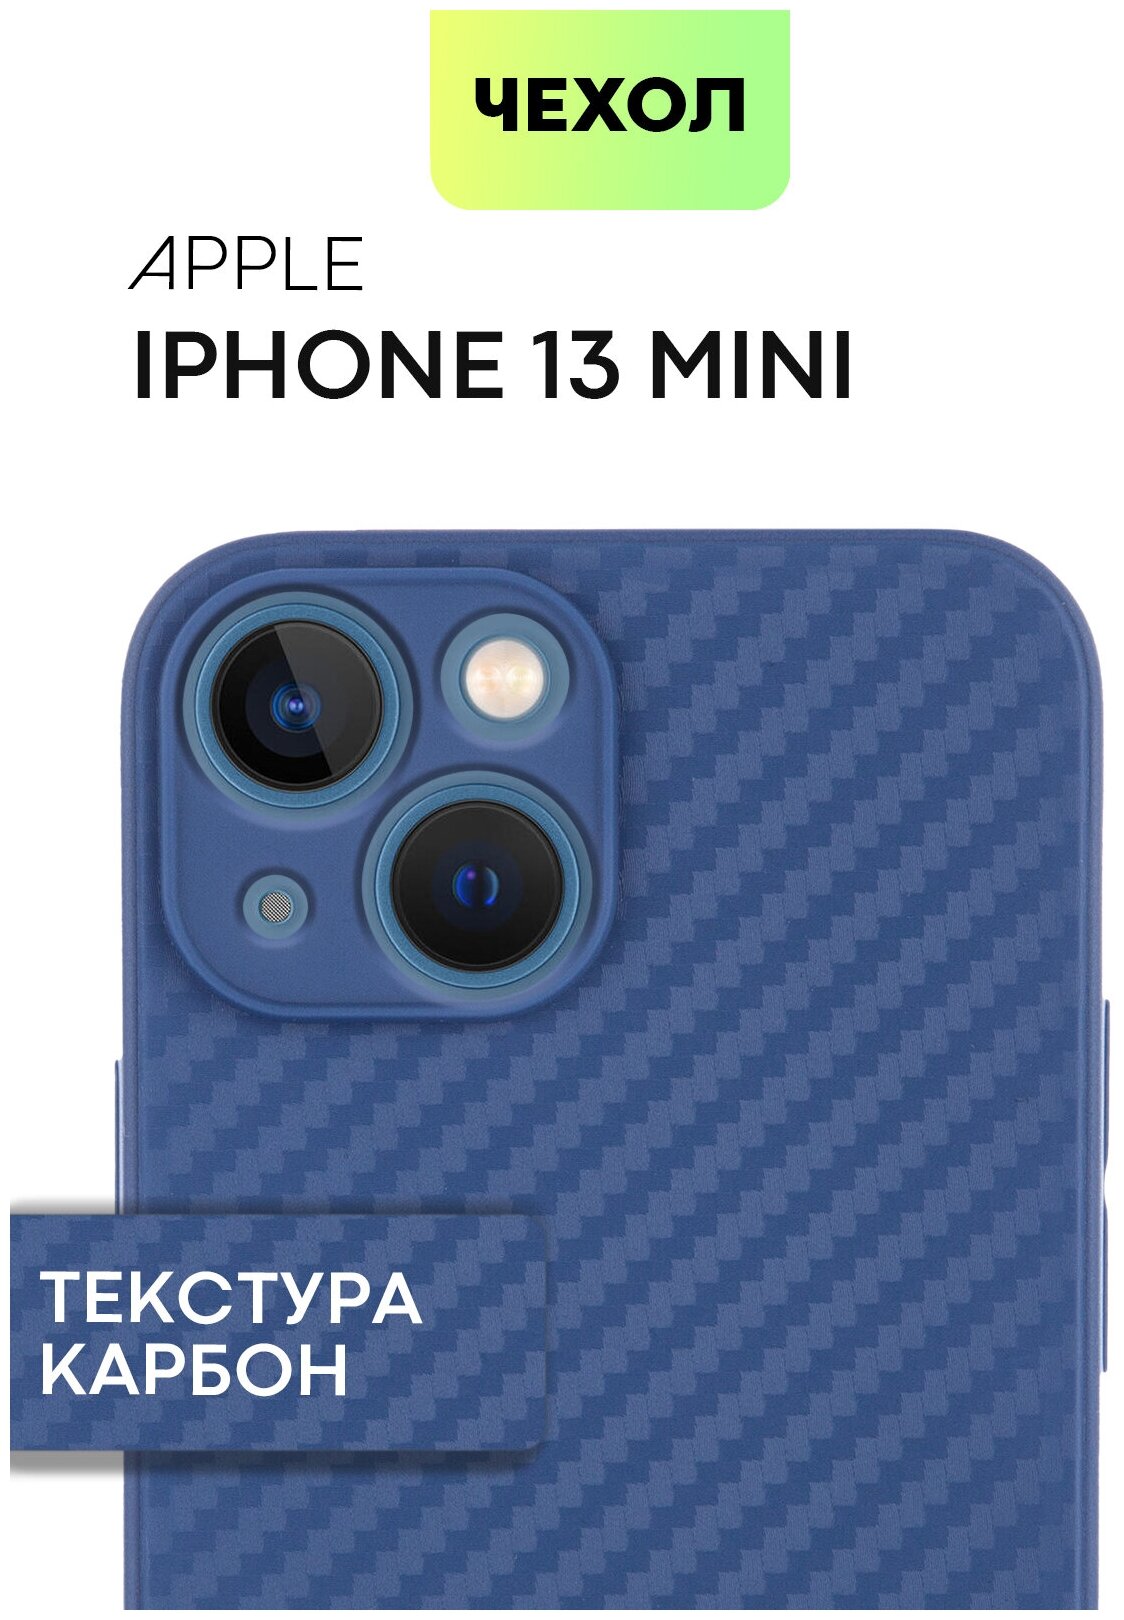 Чехол-бампер карбон Apple iPhone 13 mini (Айфон 13 мини) надежно лежит в руке, синий